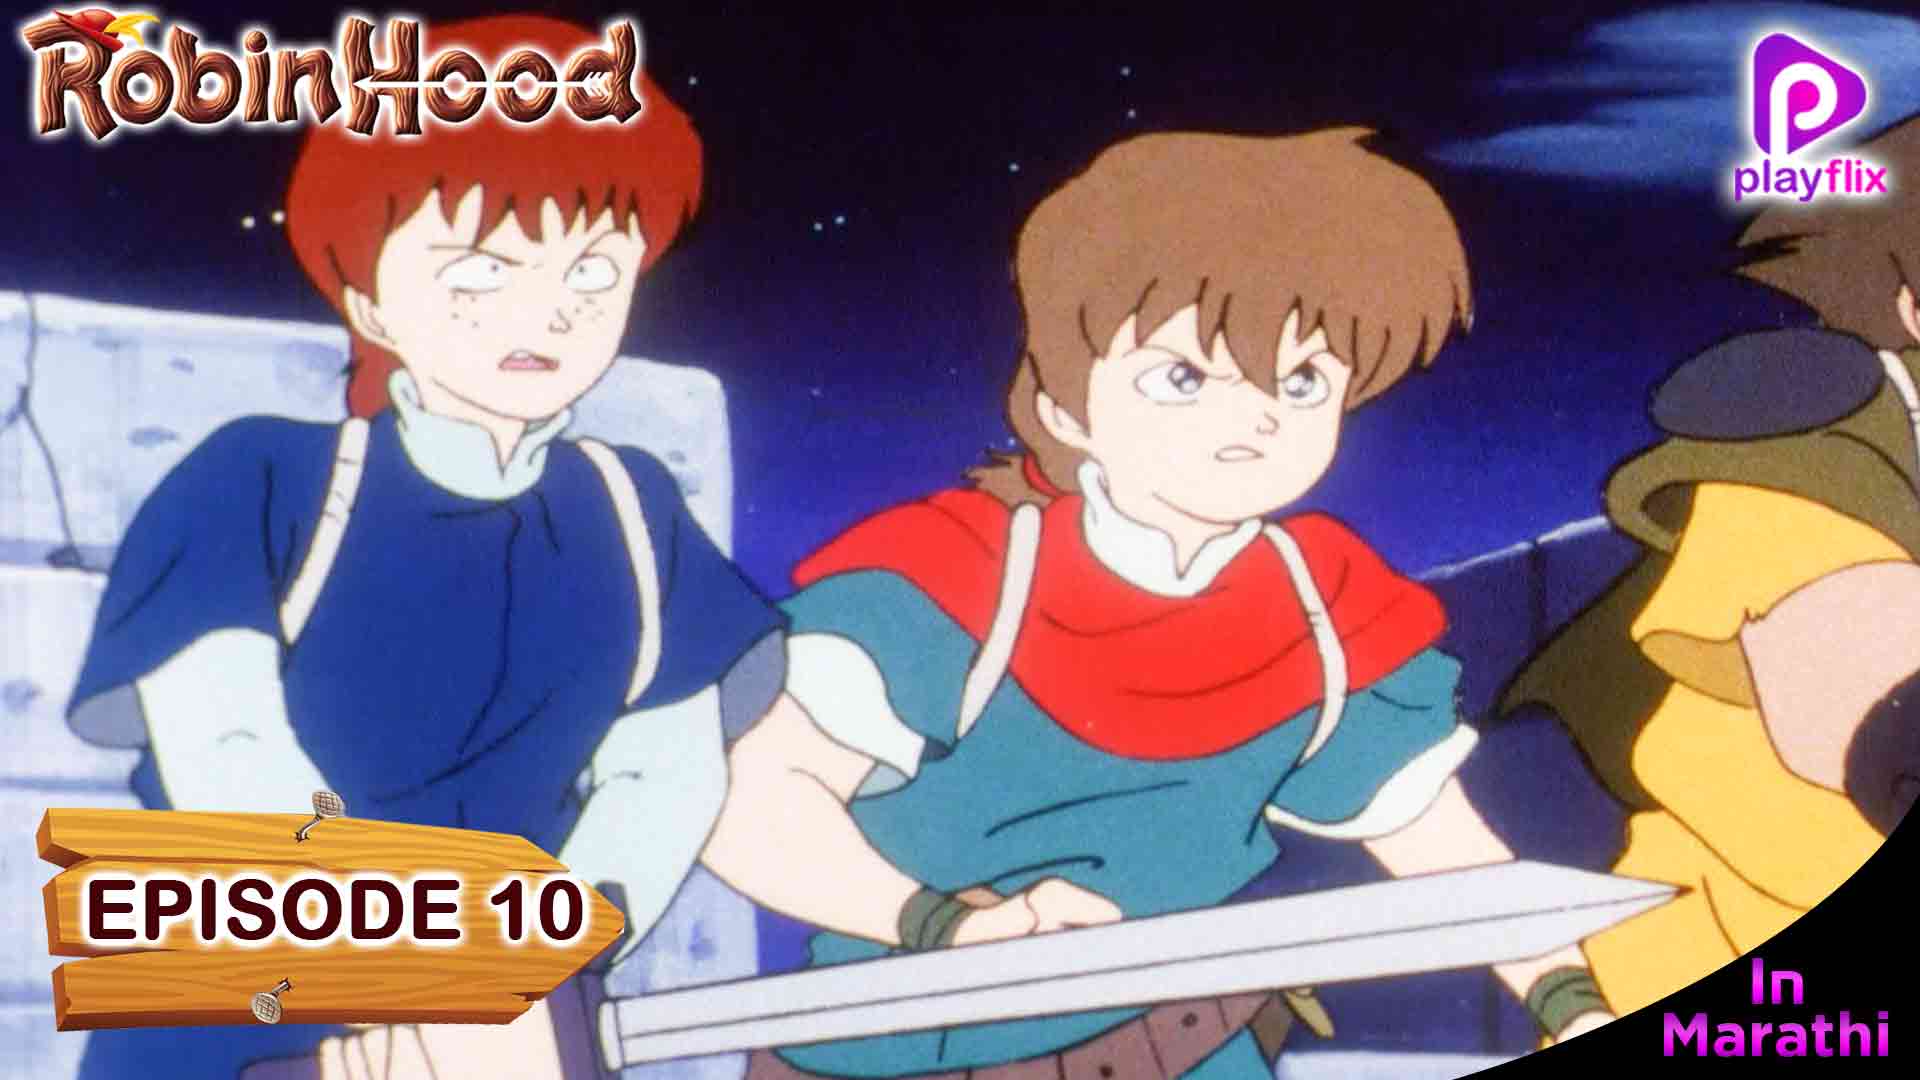 Robinhood Episode 10